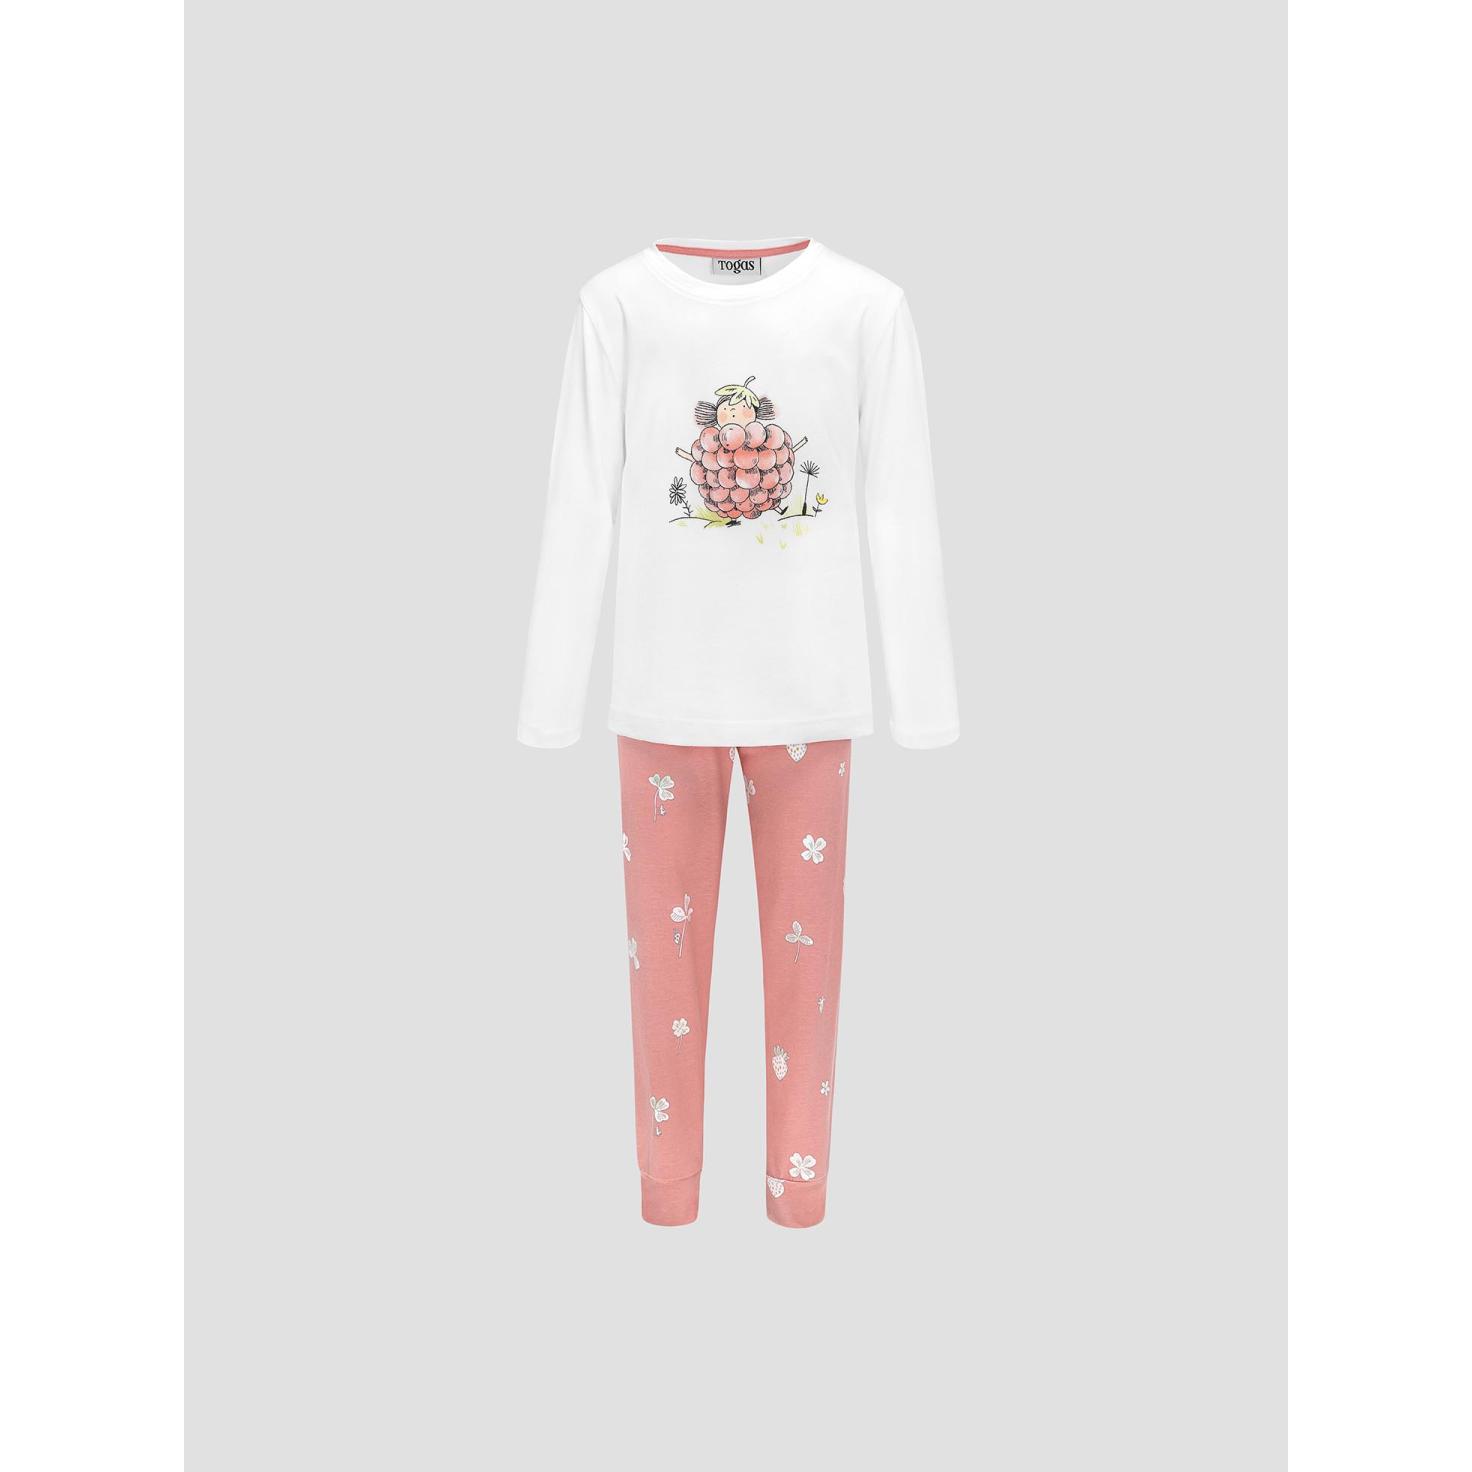 Пижама для девочек Kids by togas Стробби бело-розовый 140-146 см жен пижама с шортами инь янь белый р 46